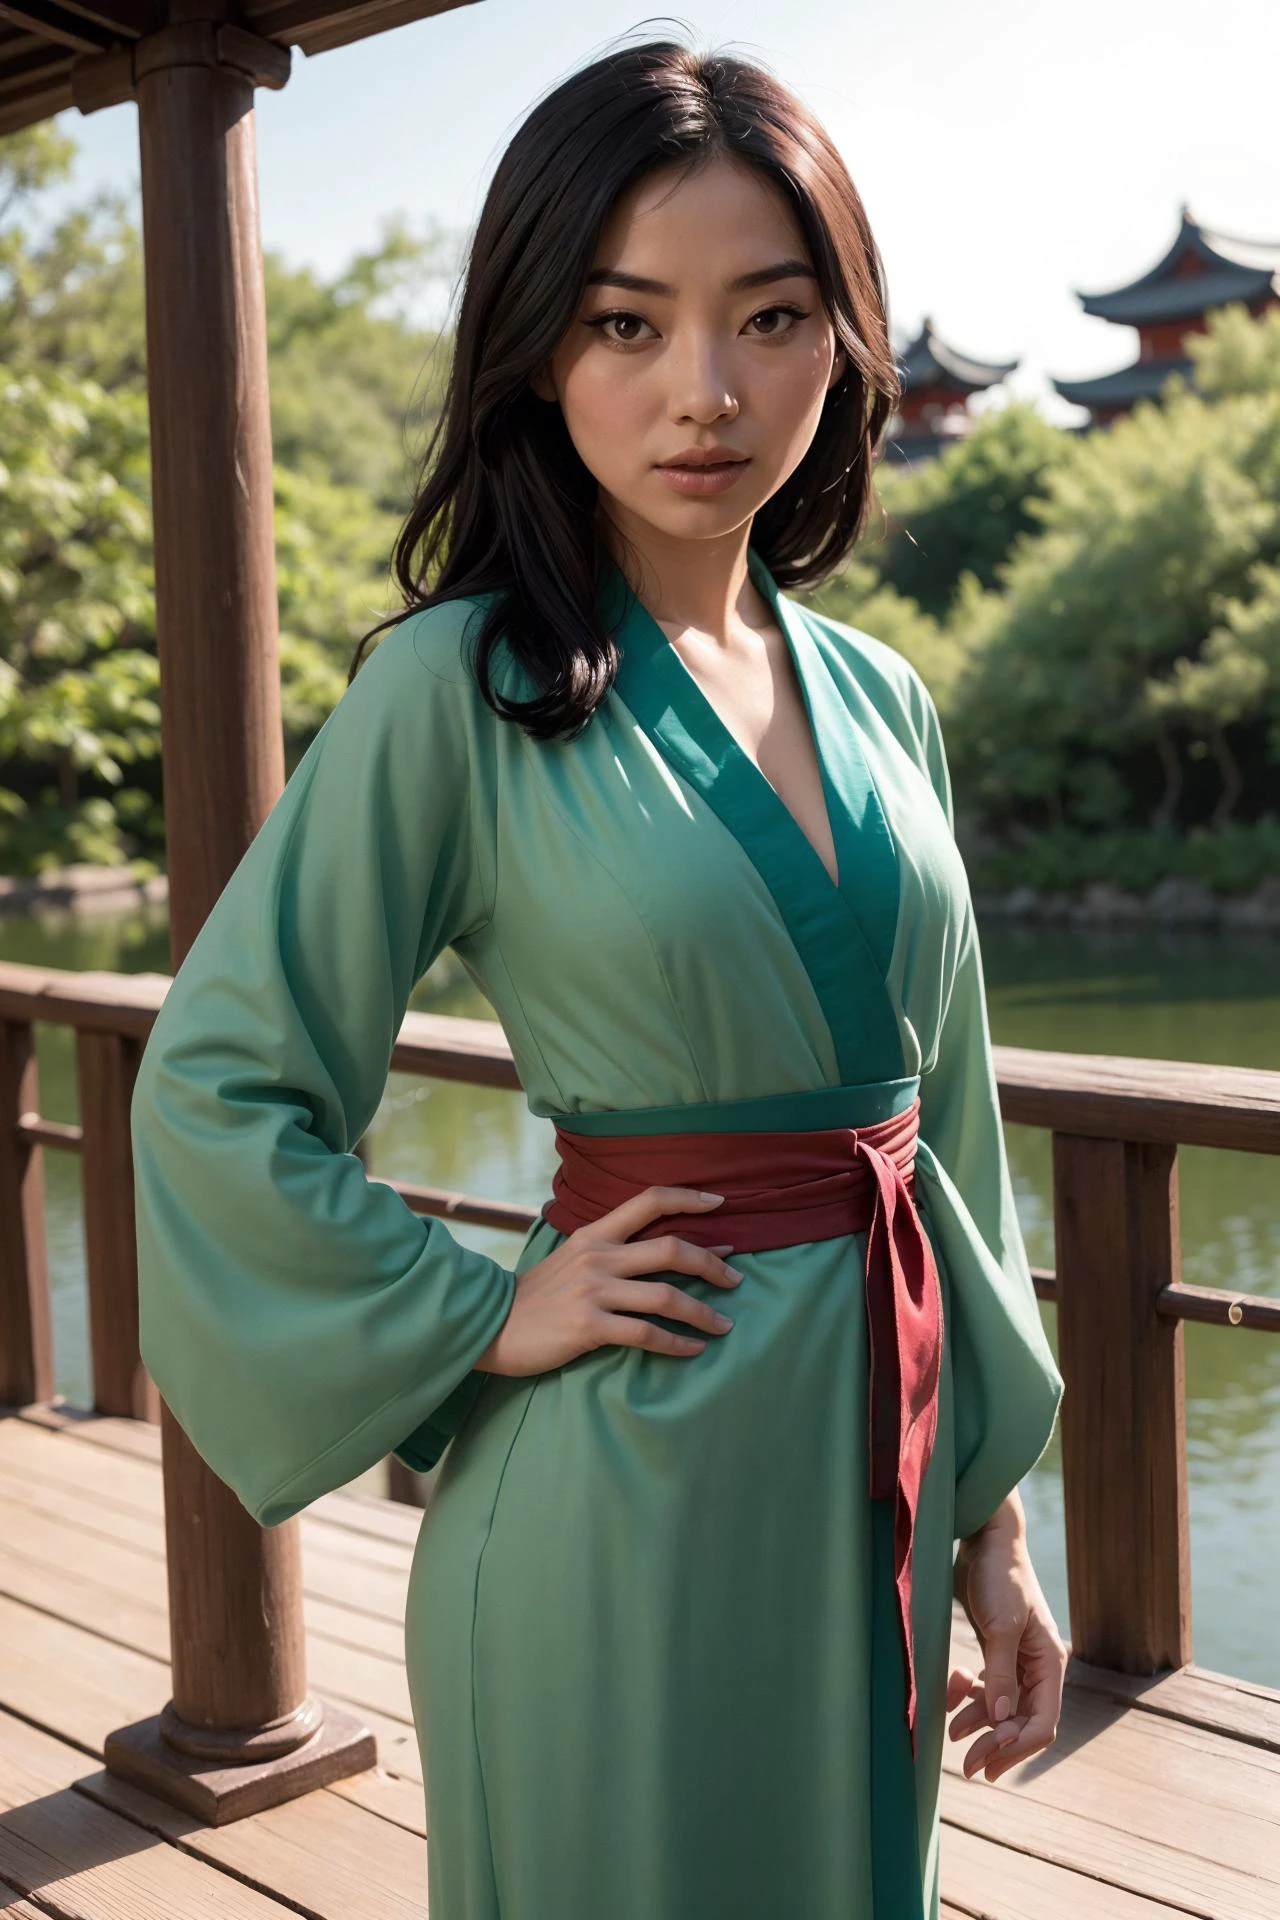 foto de Fa Mulan, uma linda mulher, (magrelo:1.2), ajustar, pele perfeita, cabelo detalhado, rosto detalhado, olhos lindos,
((mangas compridas, vestido verde, faixa vermelha)),
(fundo desfocado do jardim de Suzhou, cênico), (pose sexy em pé), (Vista da frente),
Erótico, elegante, Sensual, sedutor, (Obra de arte, melhor qualidade), (fotorrealista:1.4), corpo todo, iluminação perfeita, (melhor sombra),
(mulanwaifu, roupas japonesas, quimono), 